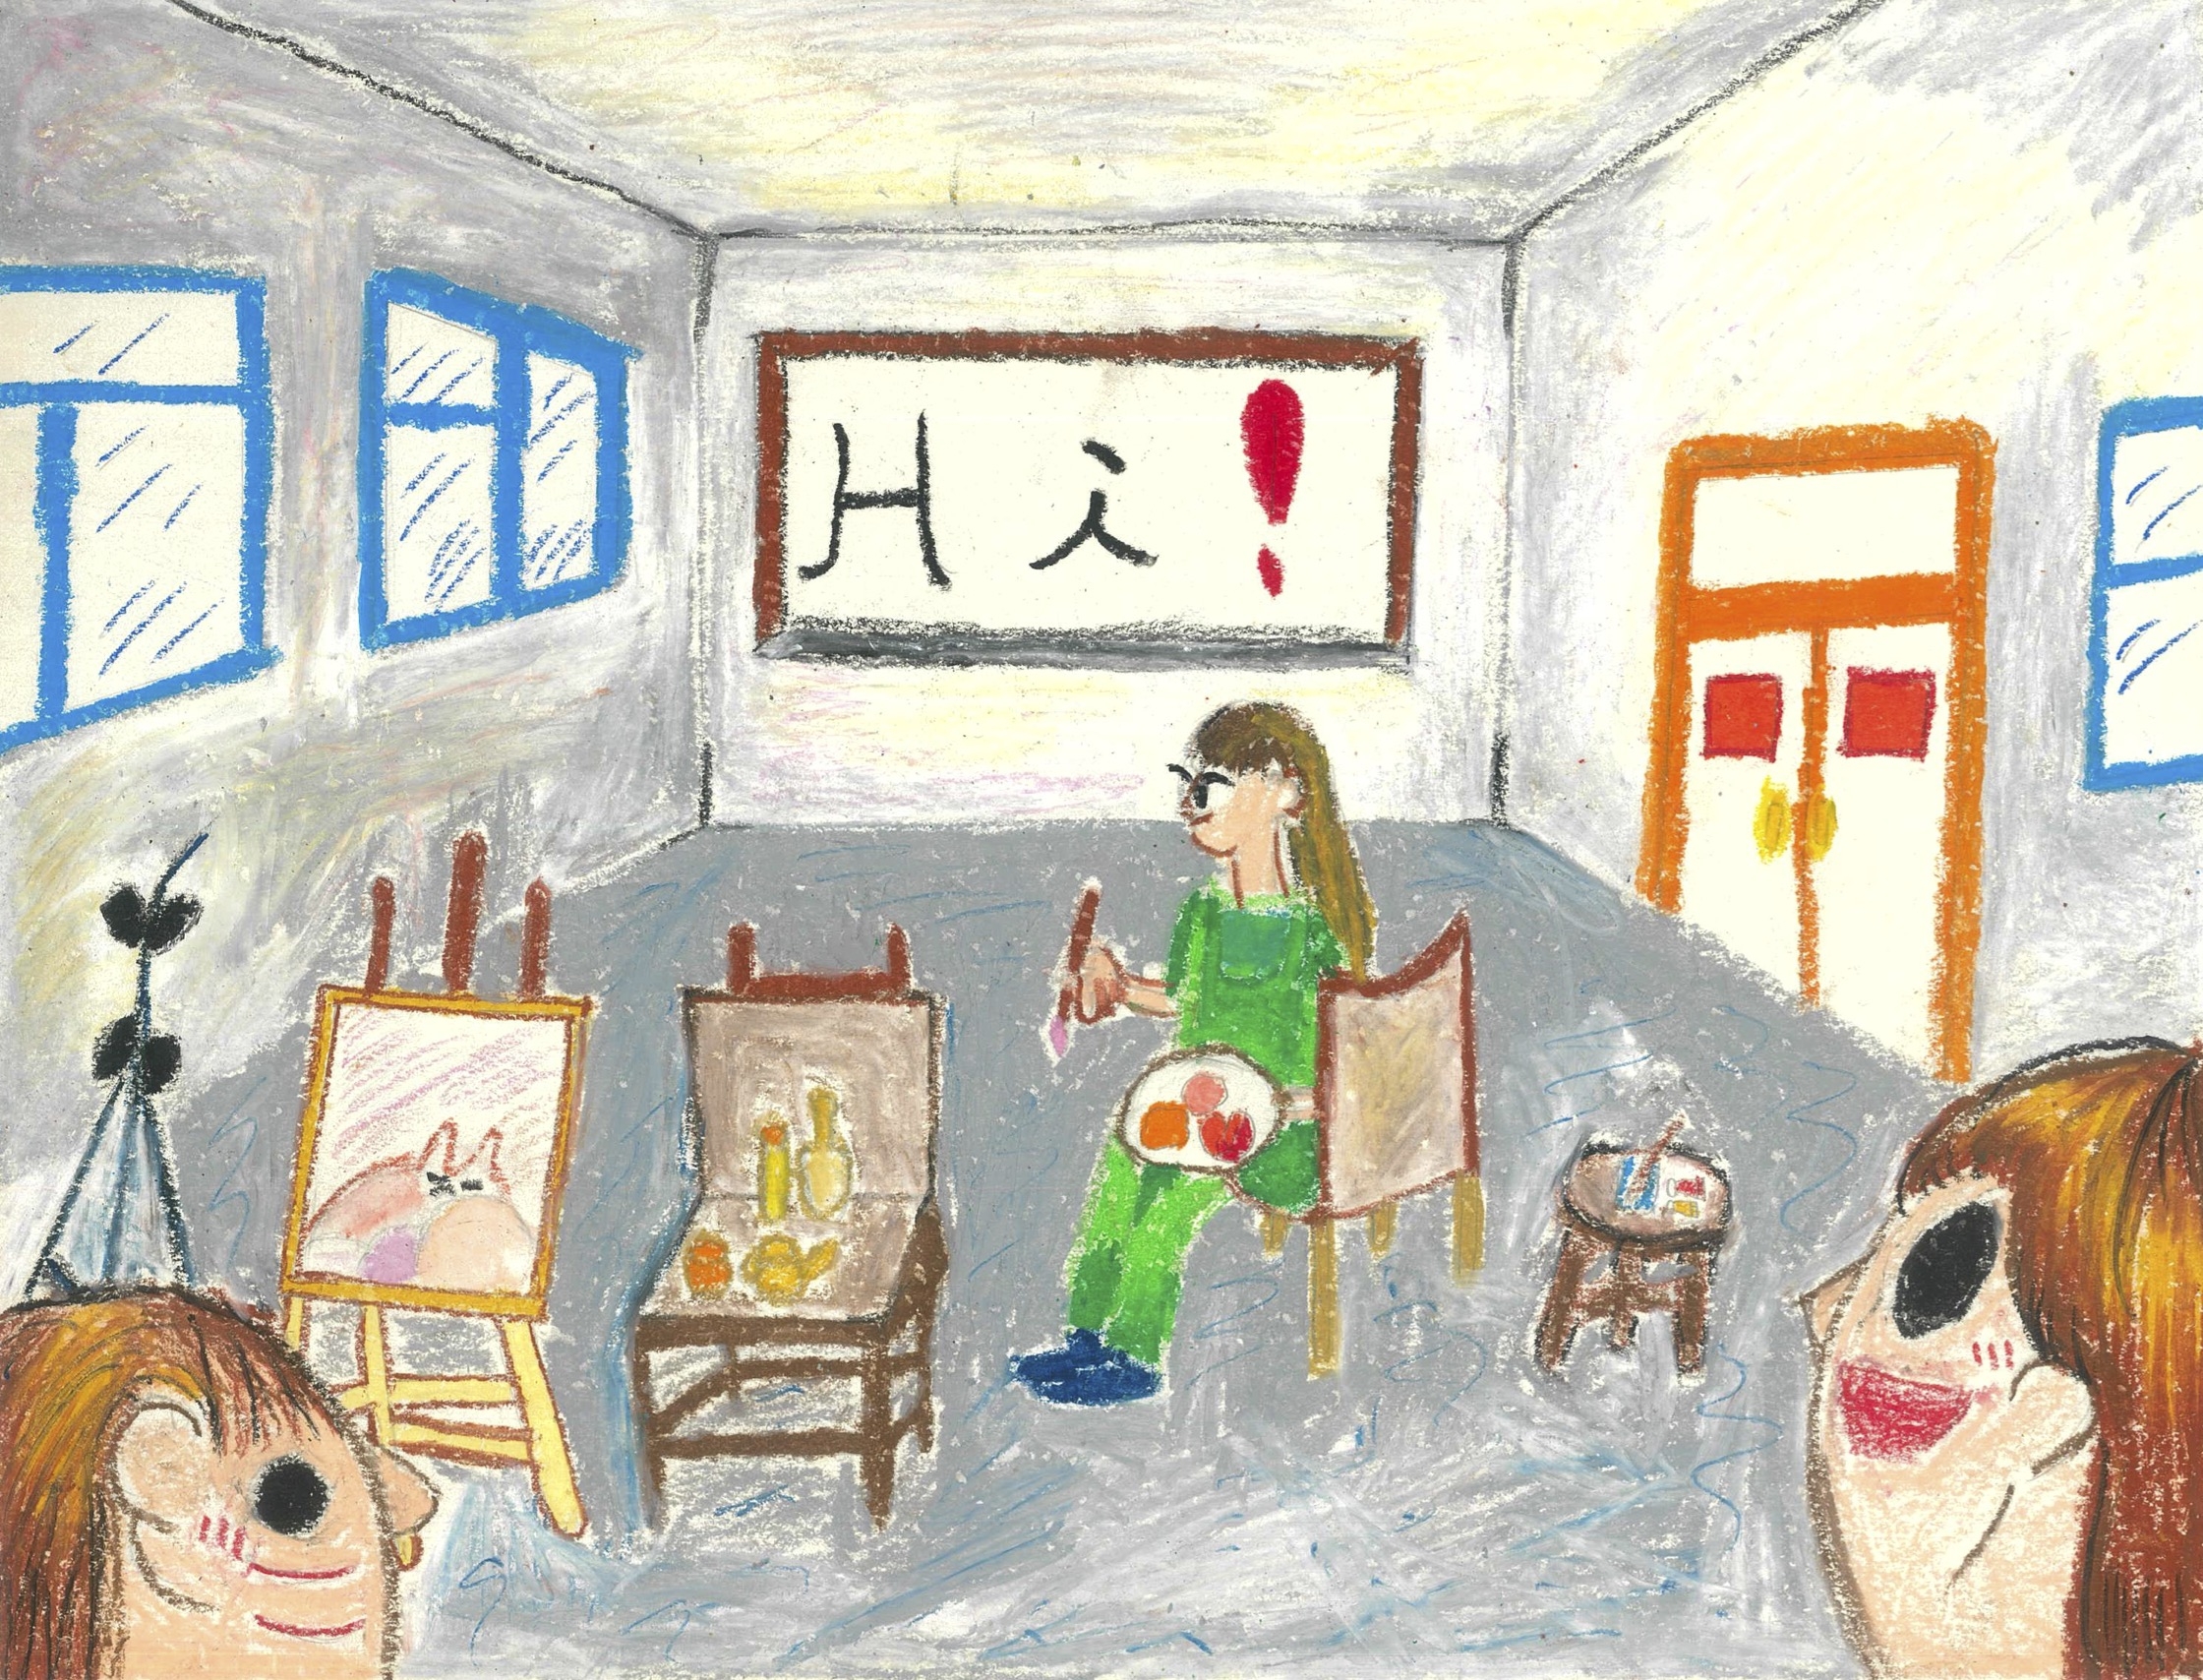 共用图片/档案 - 4B Zhang Hoi Lam_Happiness Has Filled in Our Art Room